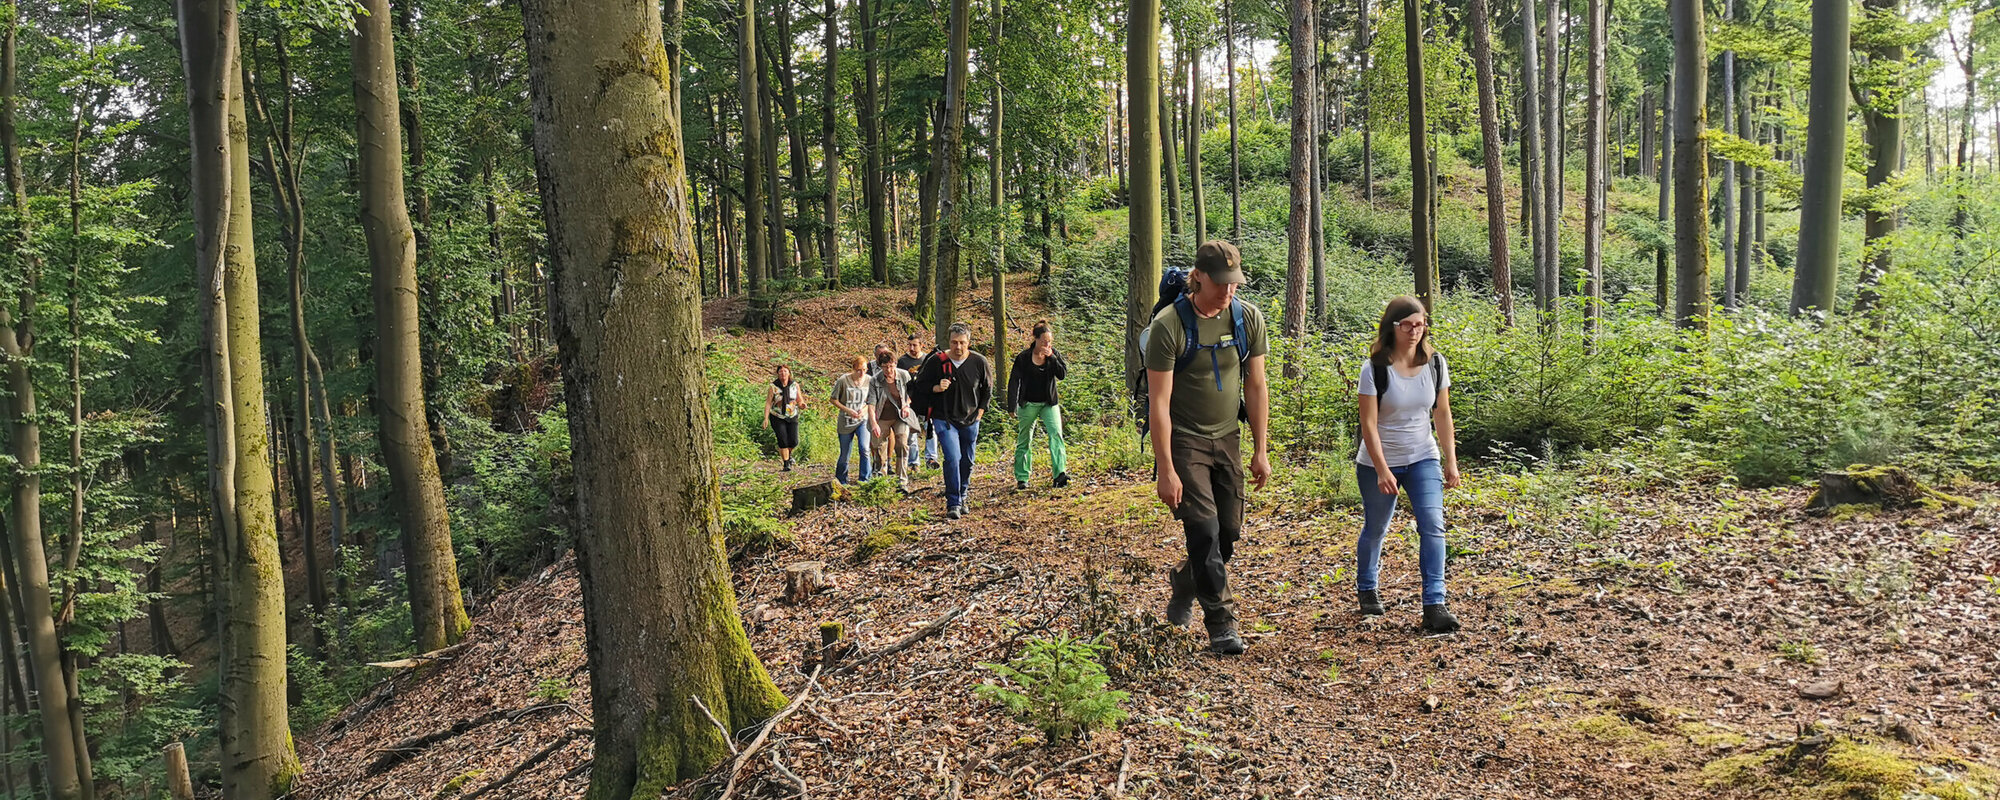 Mehrere Wanderer laufen über braunes Laub durch einen Wald.